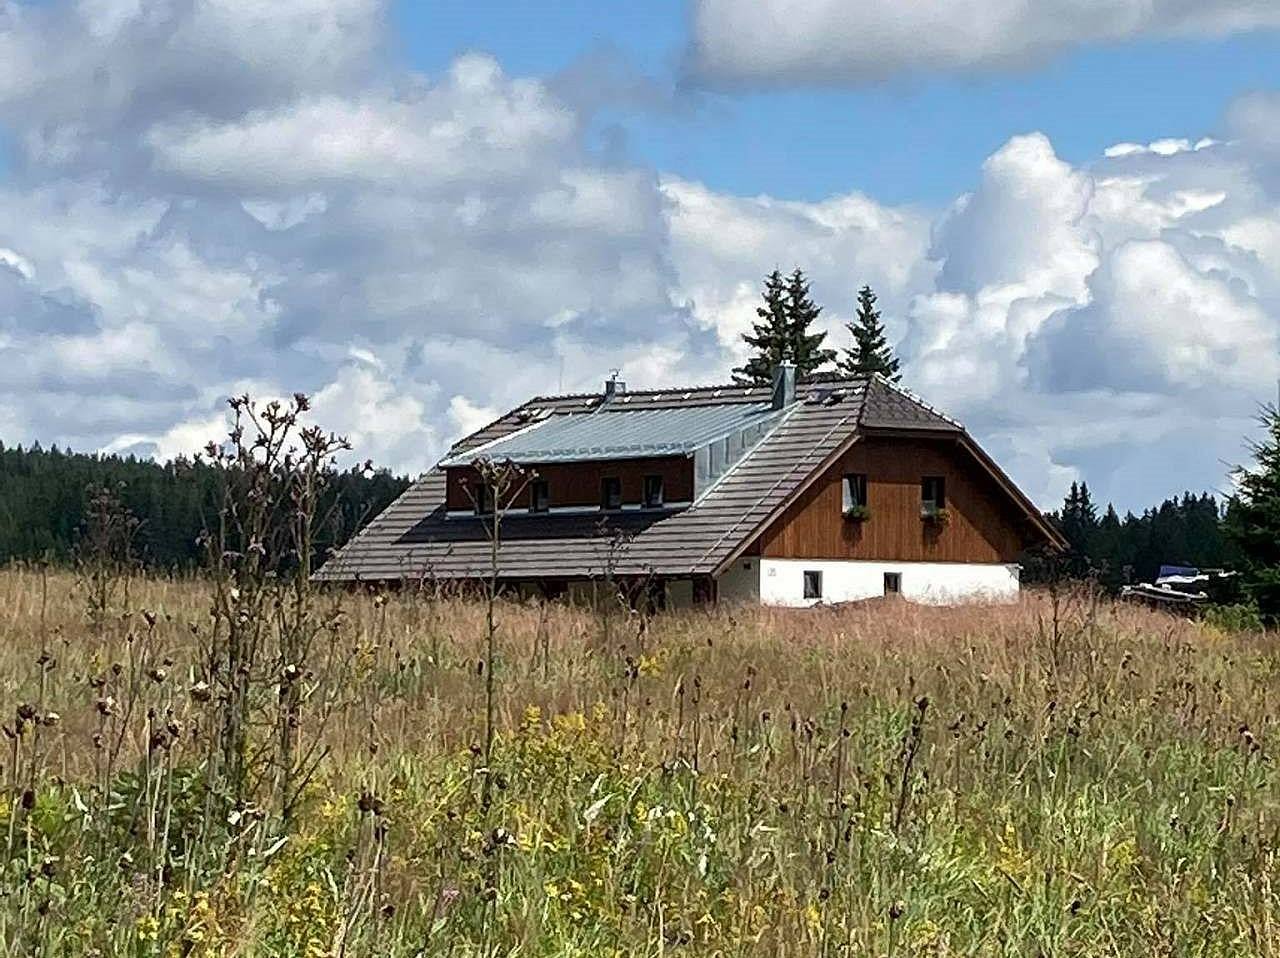 Casa de campo no final do verão